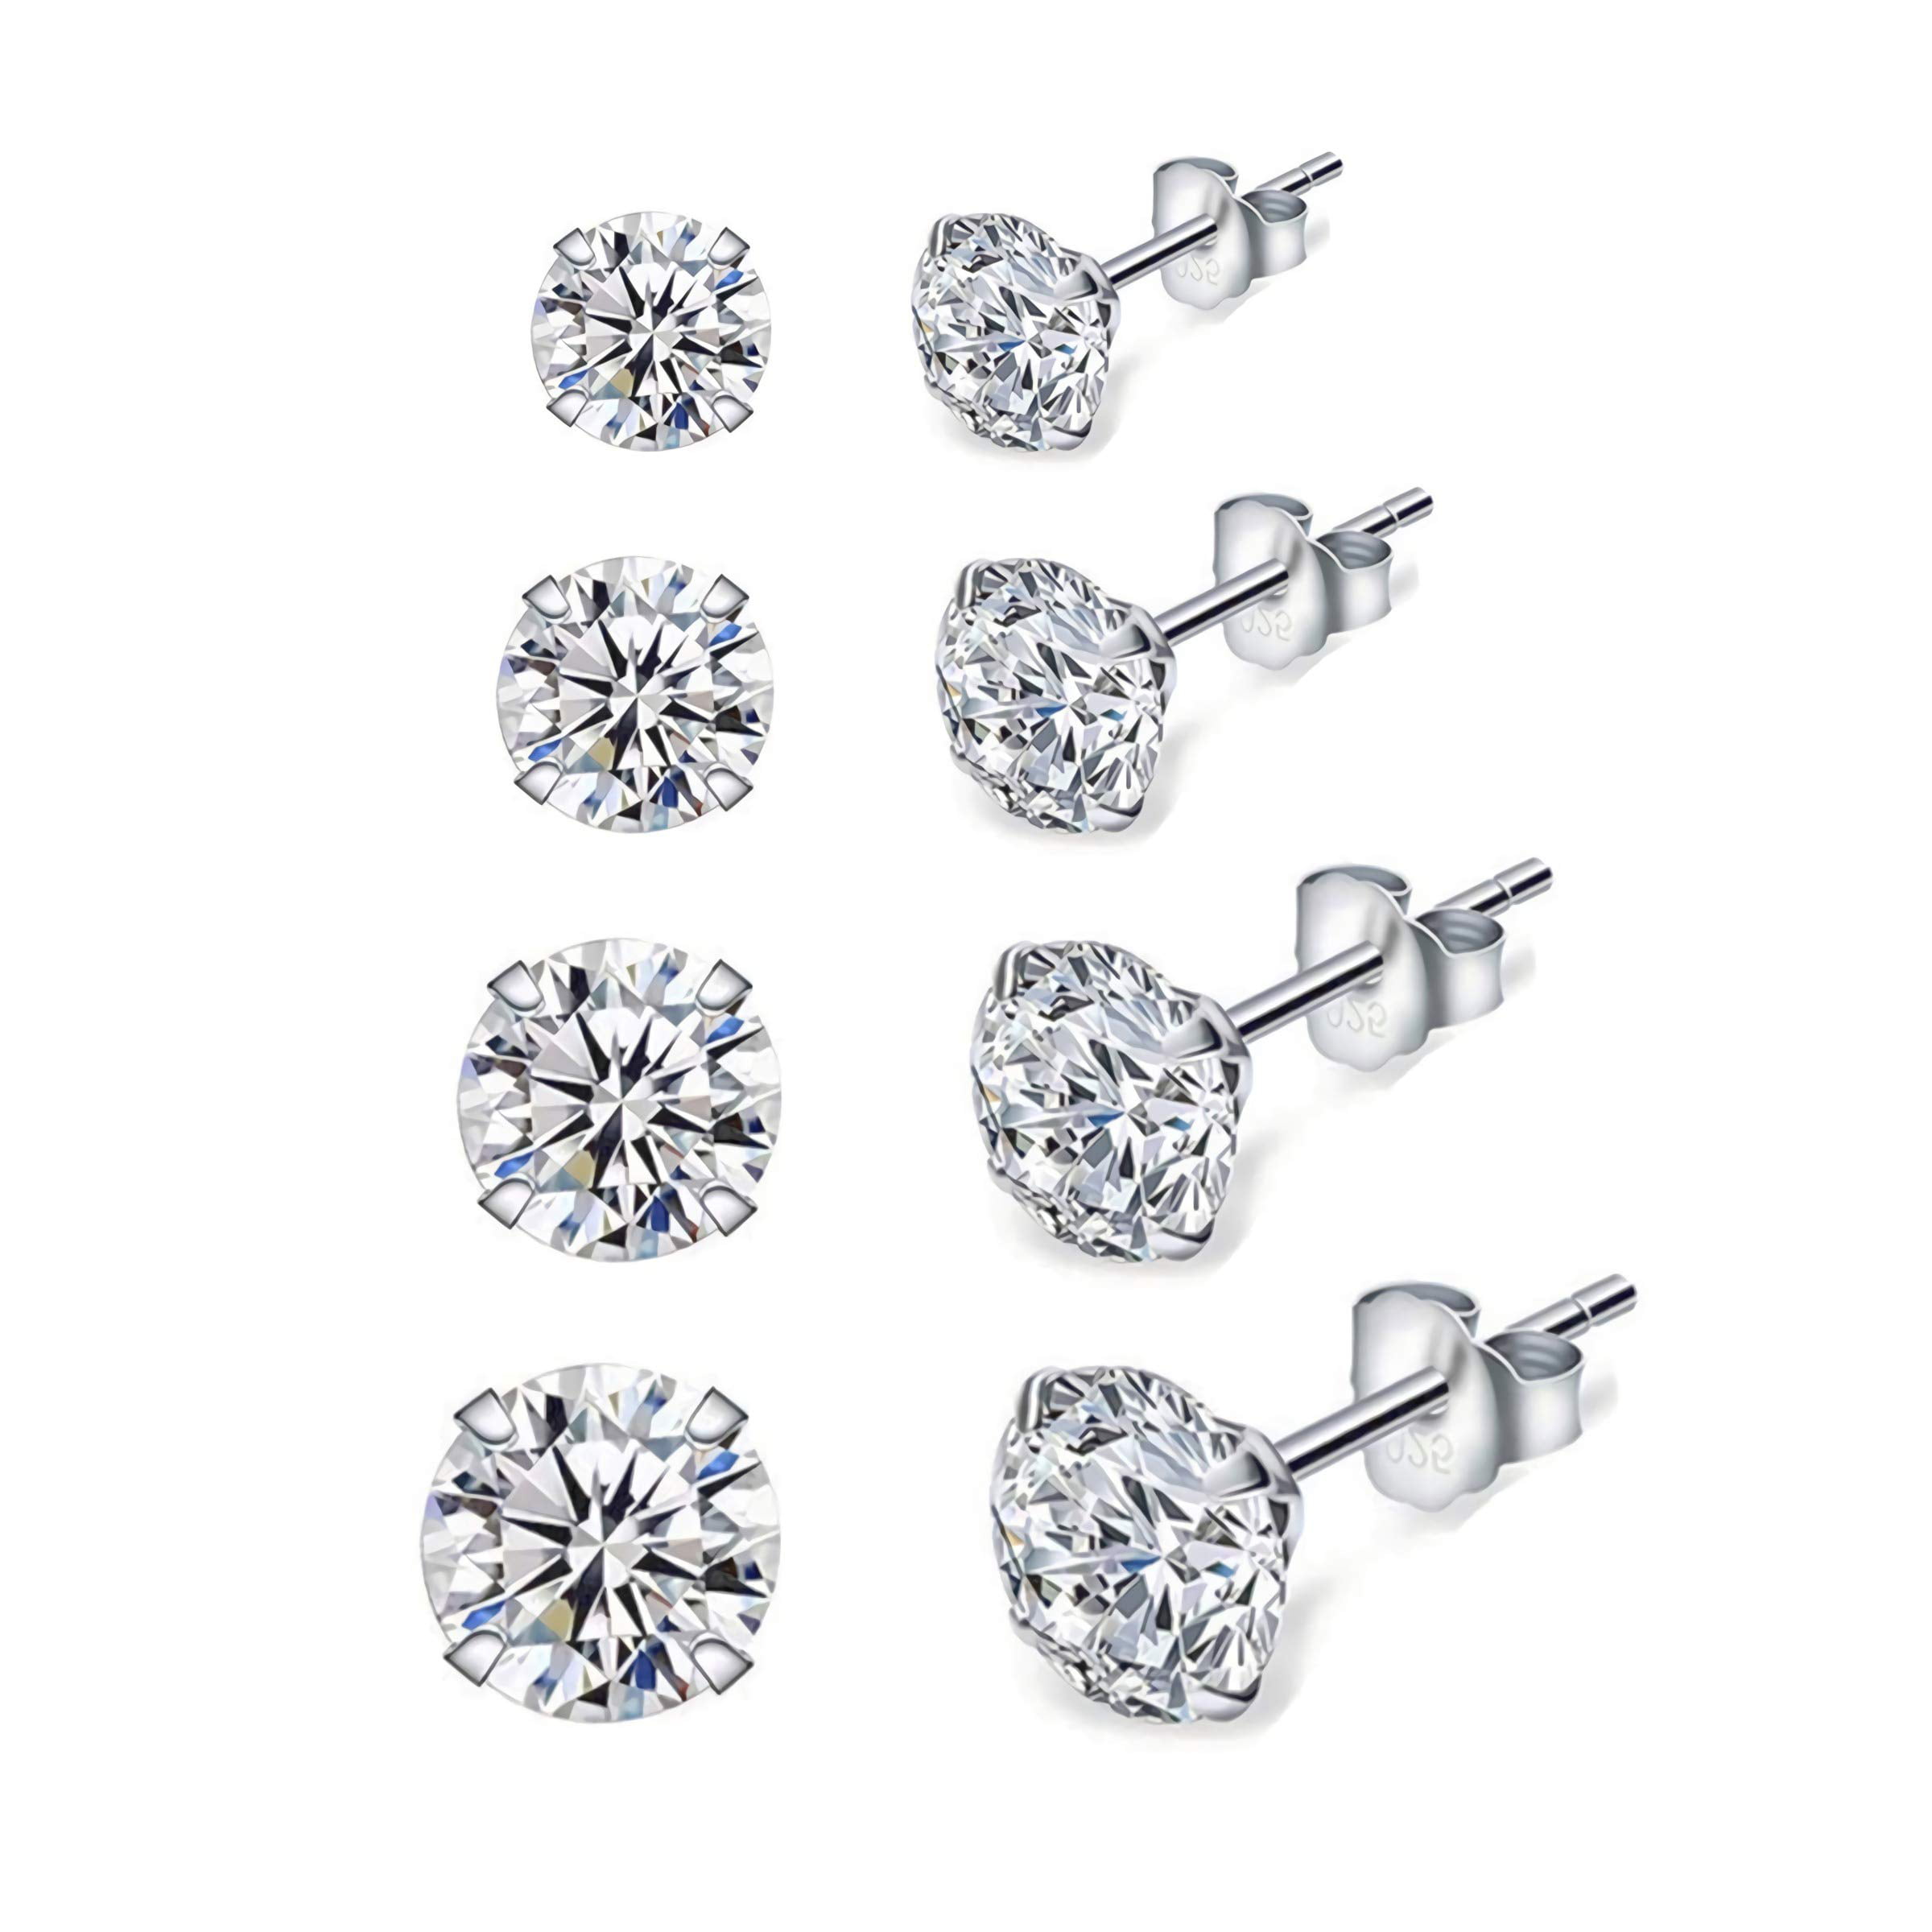 Pearl Stud Earrings 925 Sterling Silver Bear Ear Studs with Crystal Zircon Earrings for Women,Girls 